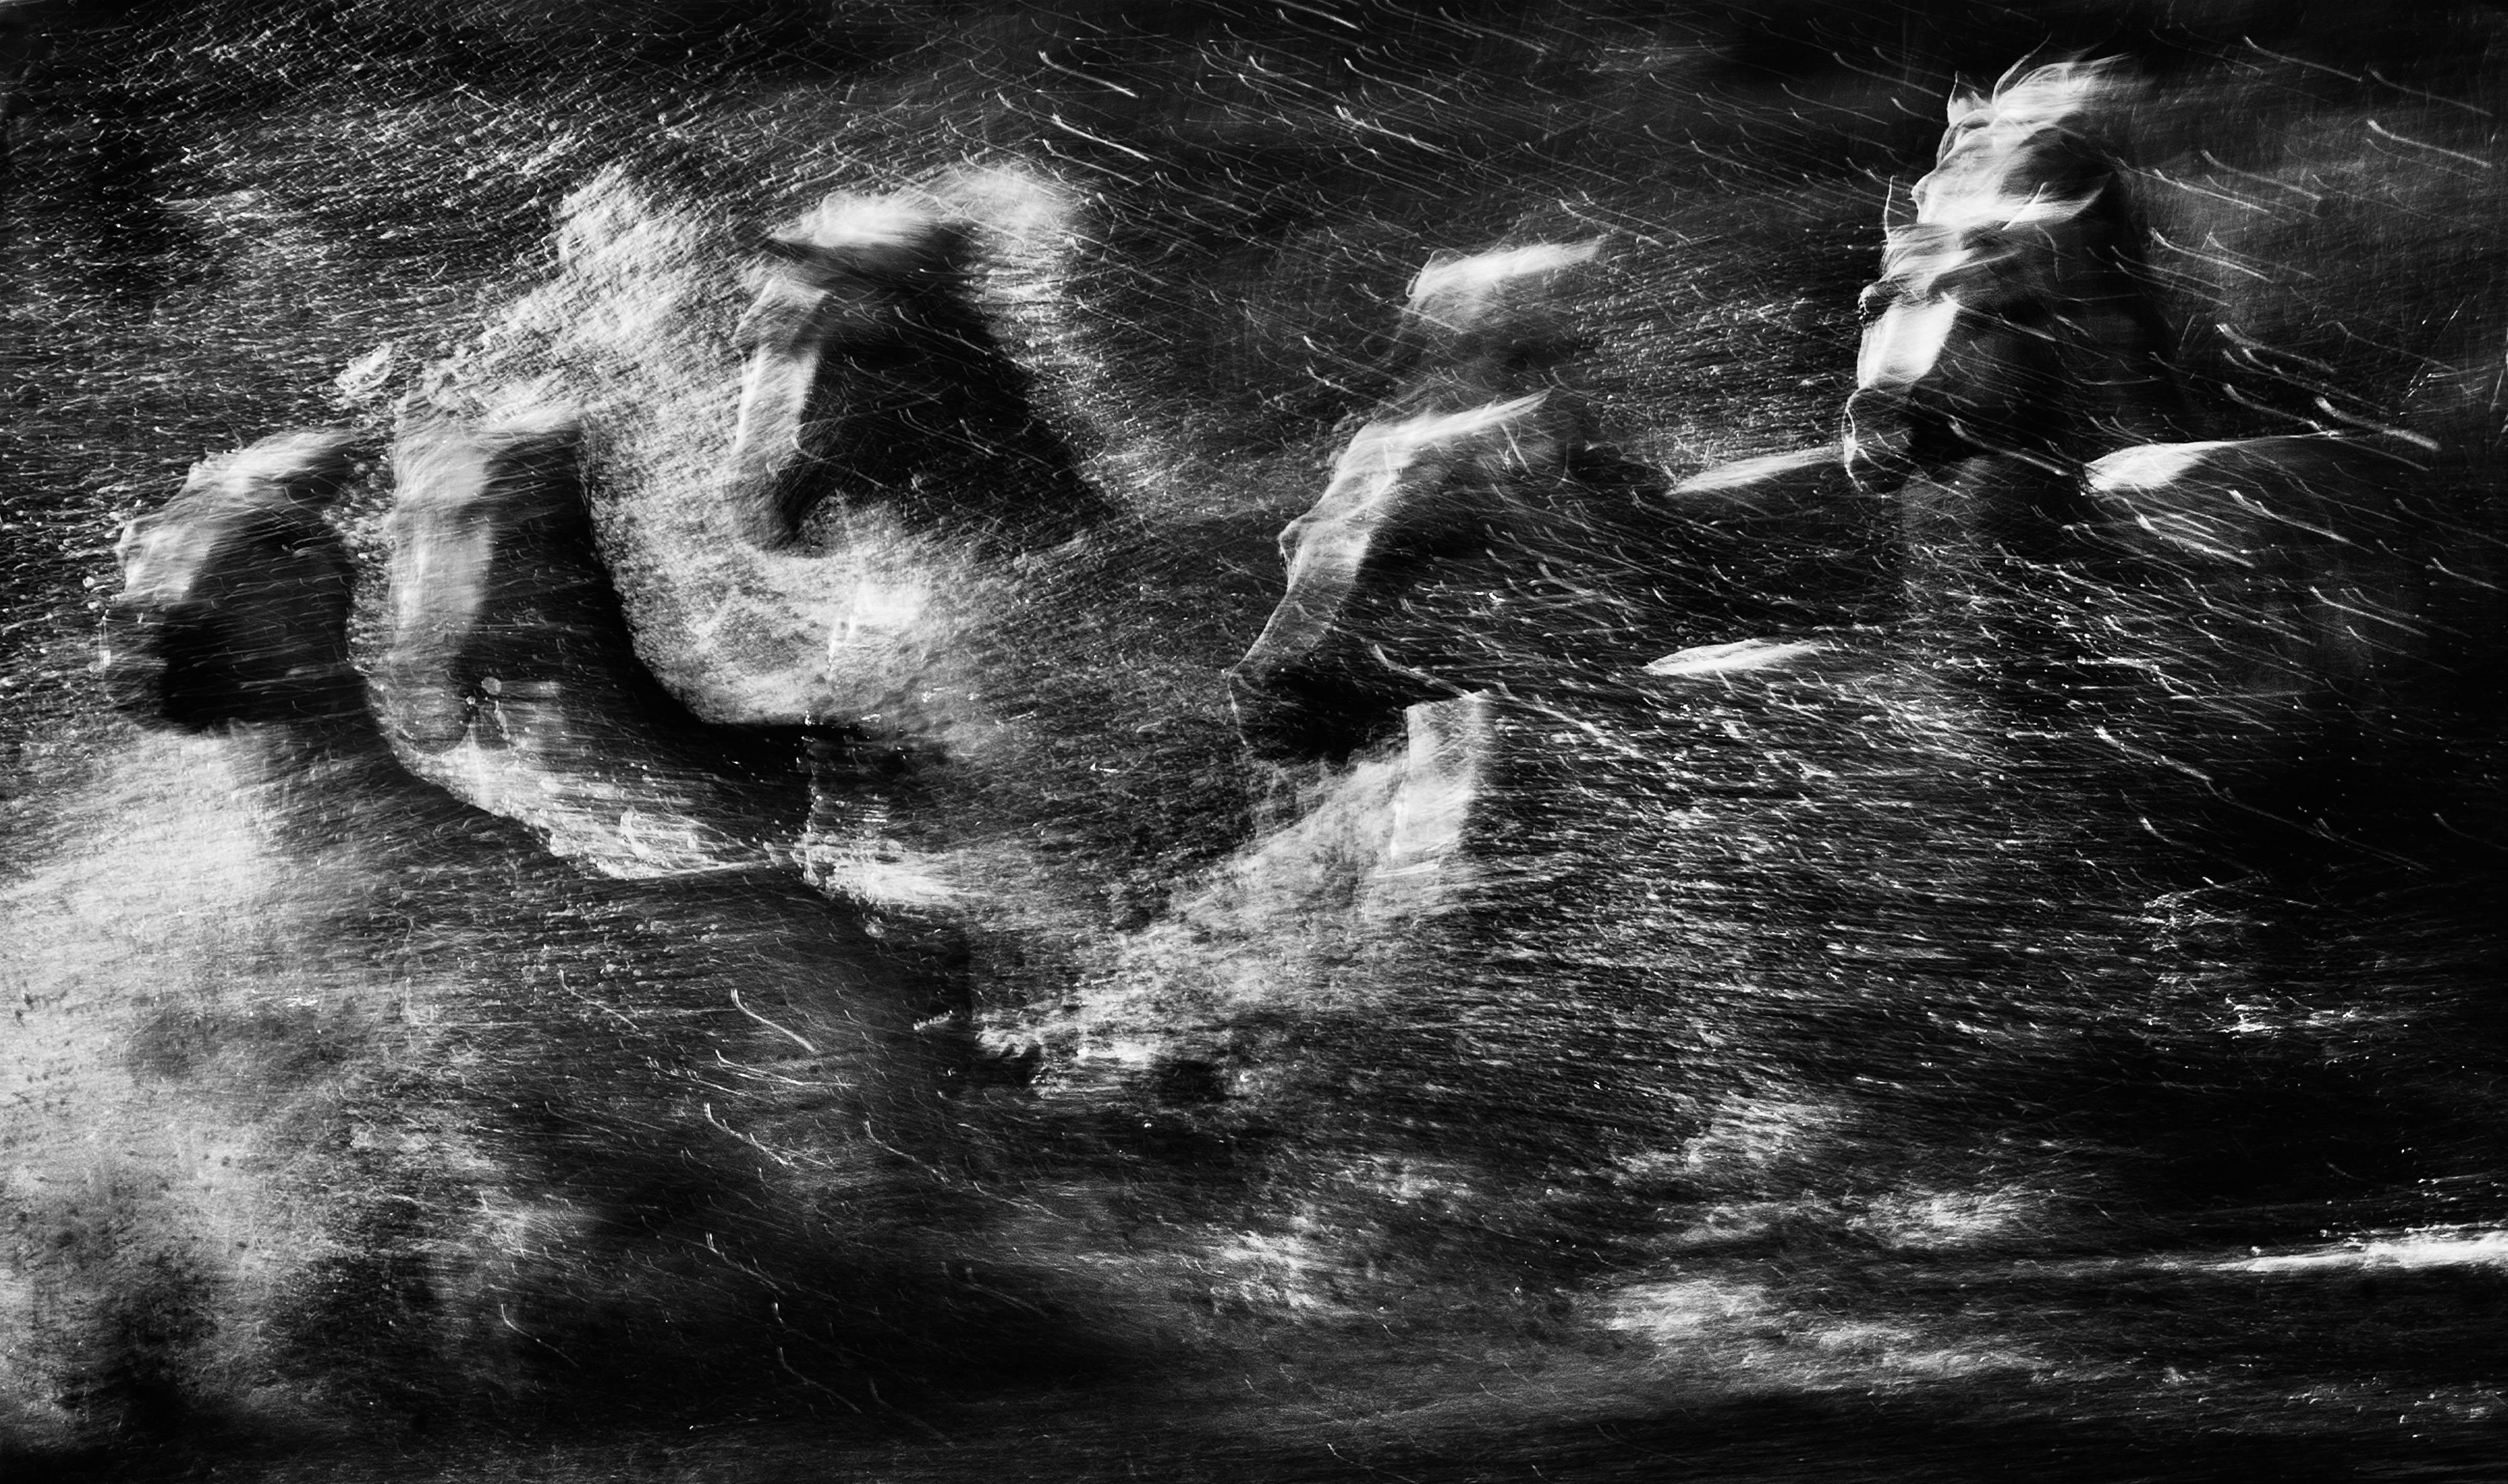 David Yarrow Black and White Photograph - White Rush